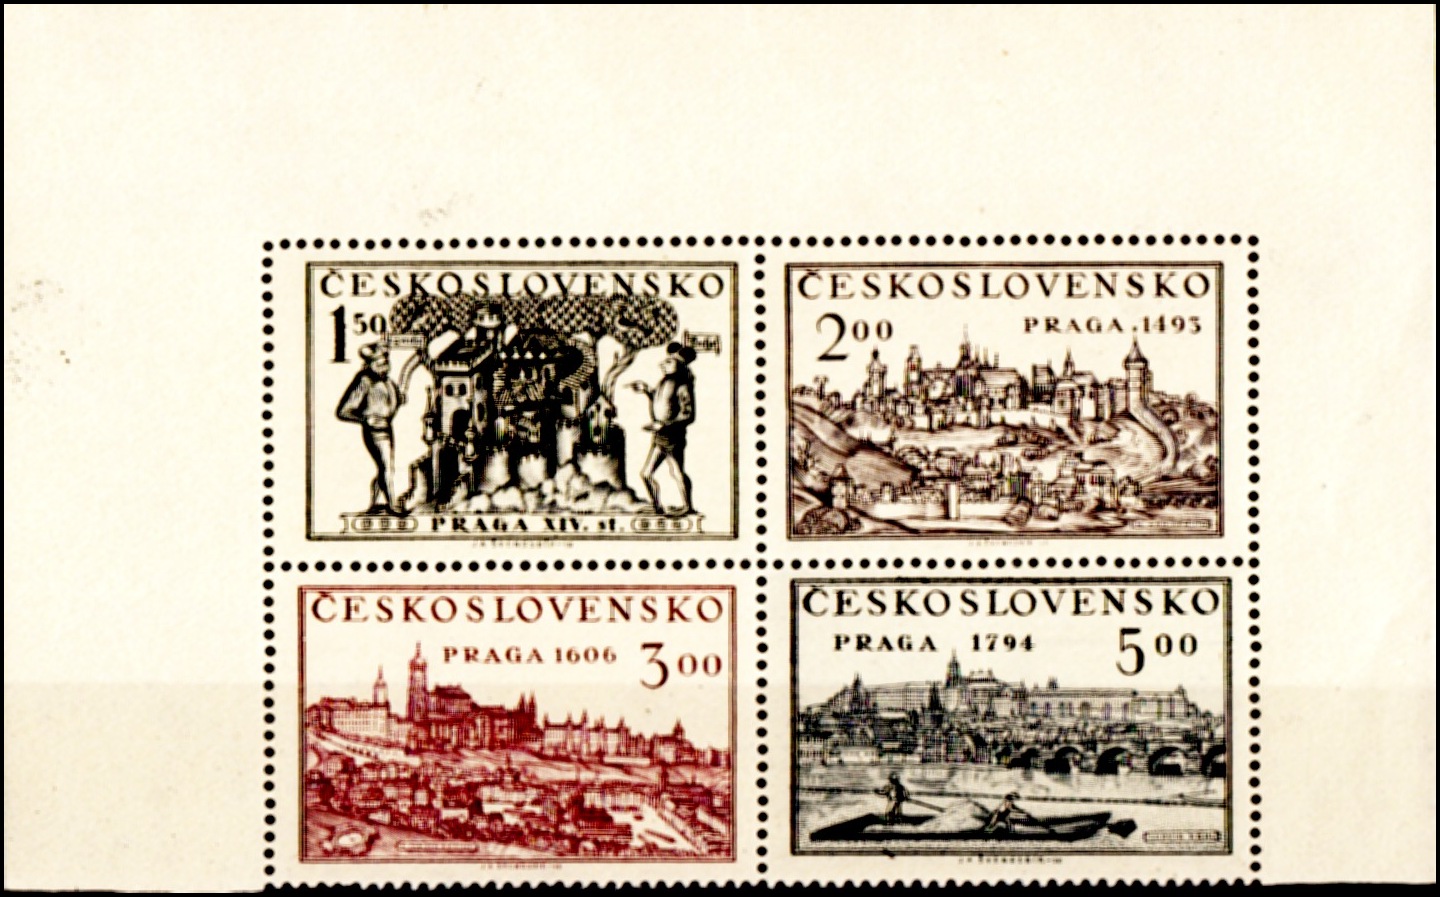 Celostátní výstava poštovních známek Praha 1950 (Stará Praha) - čtyřblok